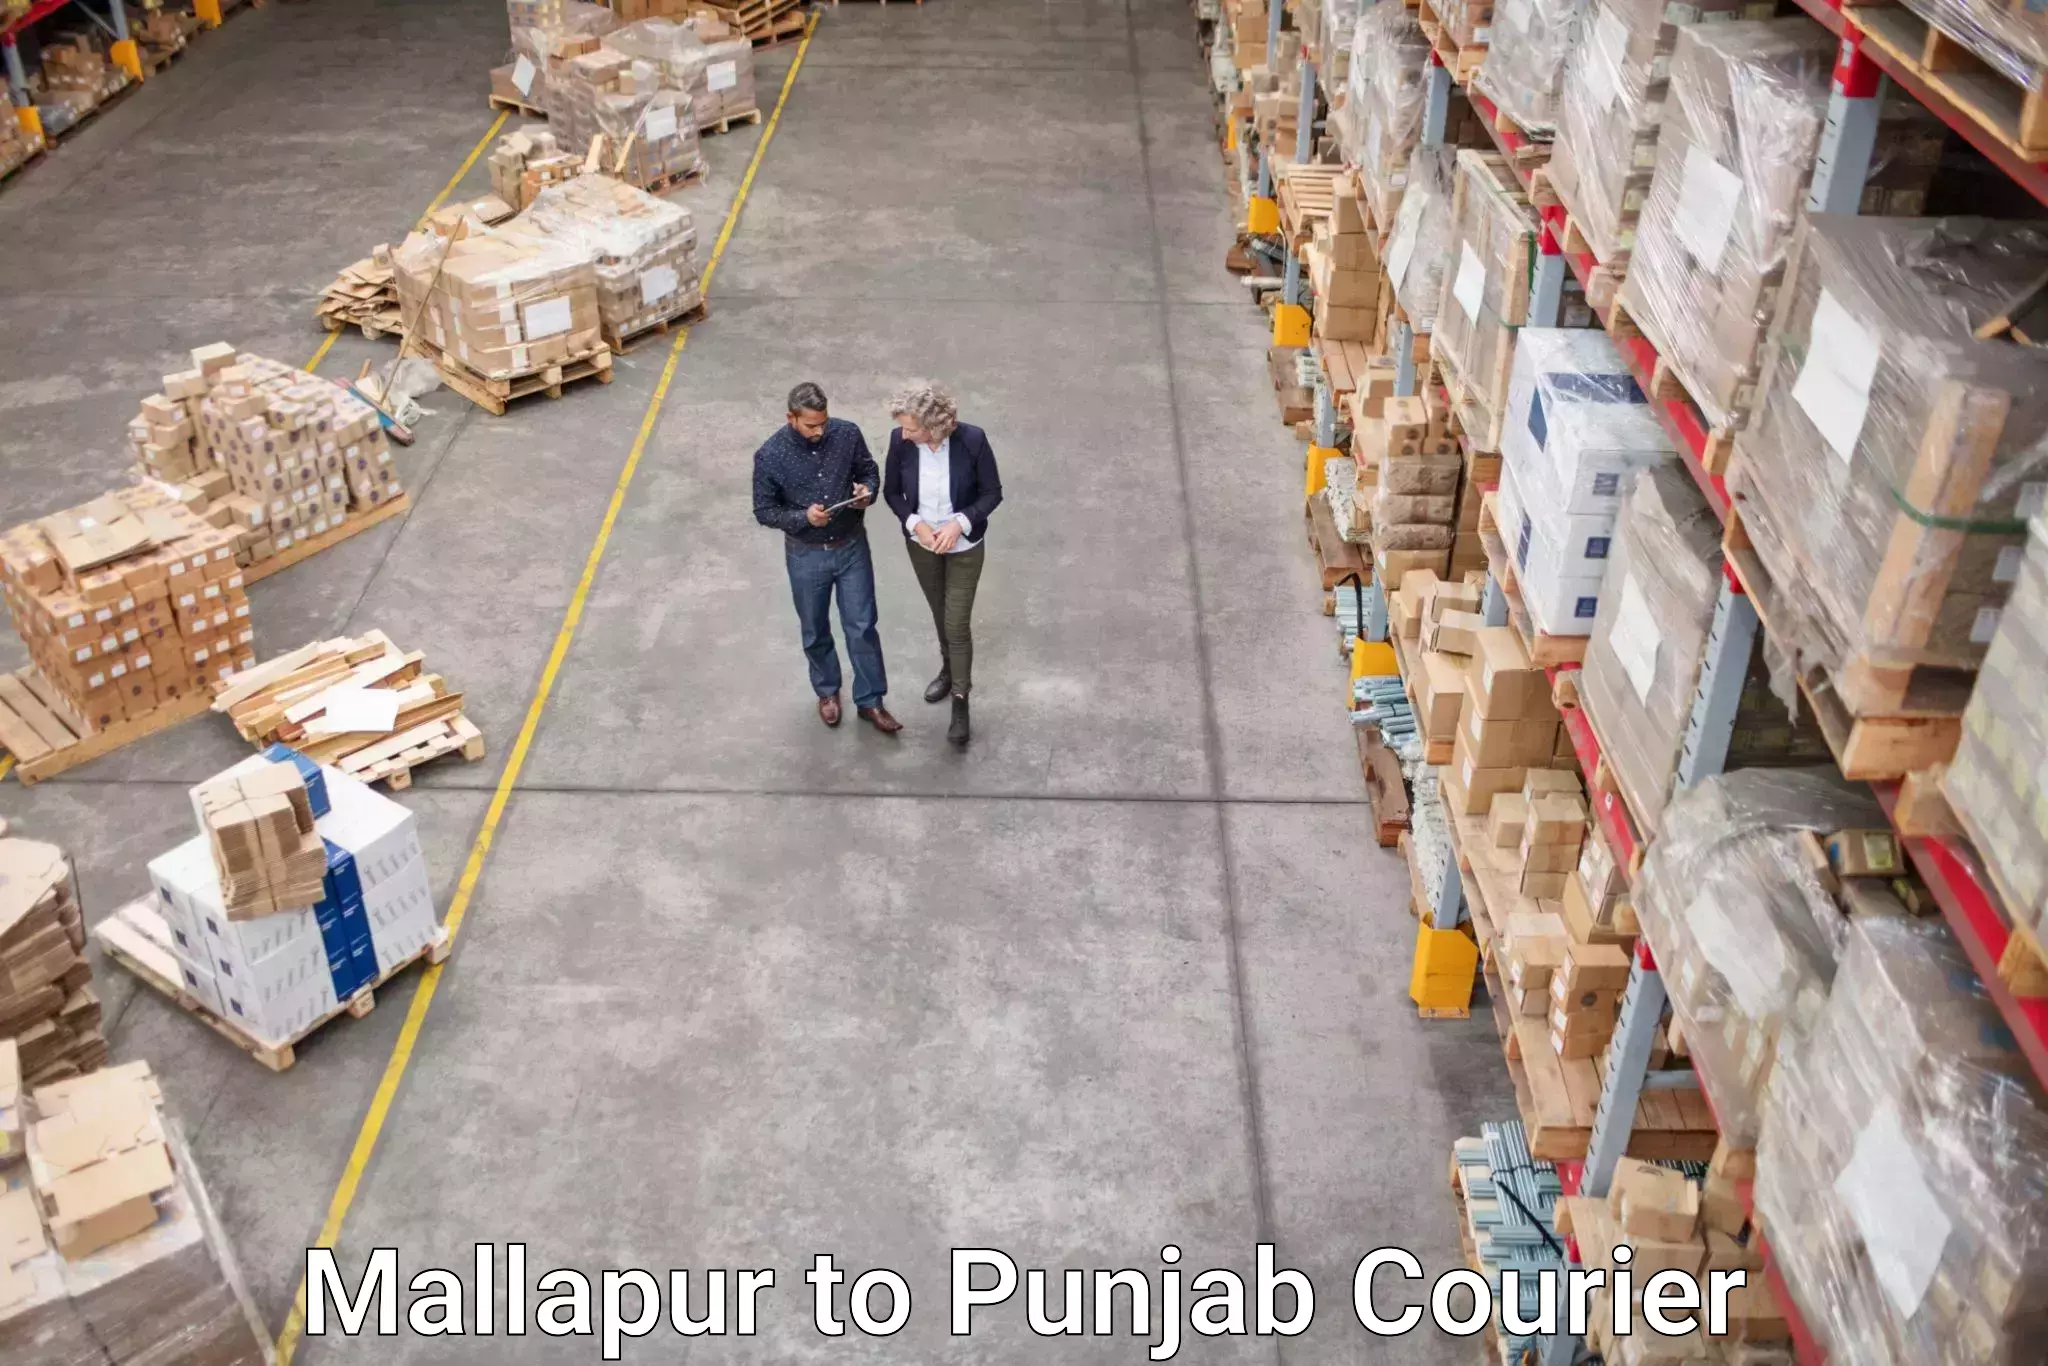 Global parcel delivery Mallapur to Jalandhar